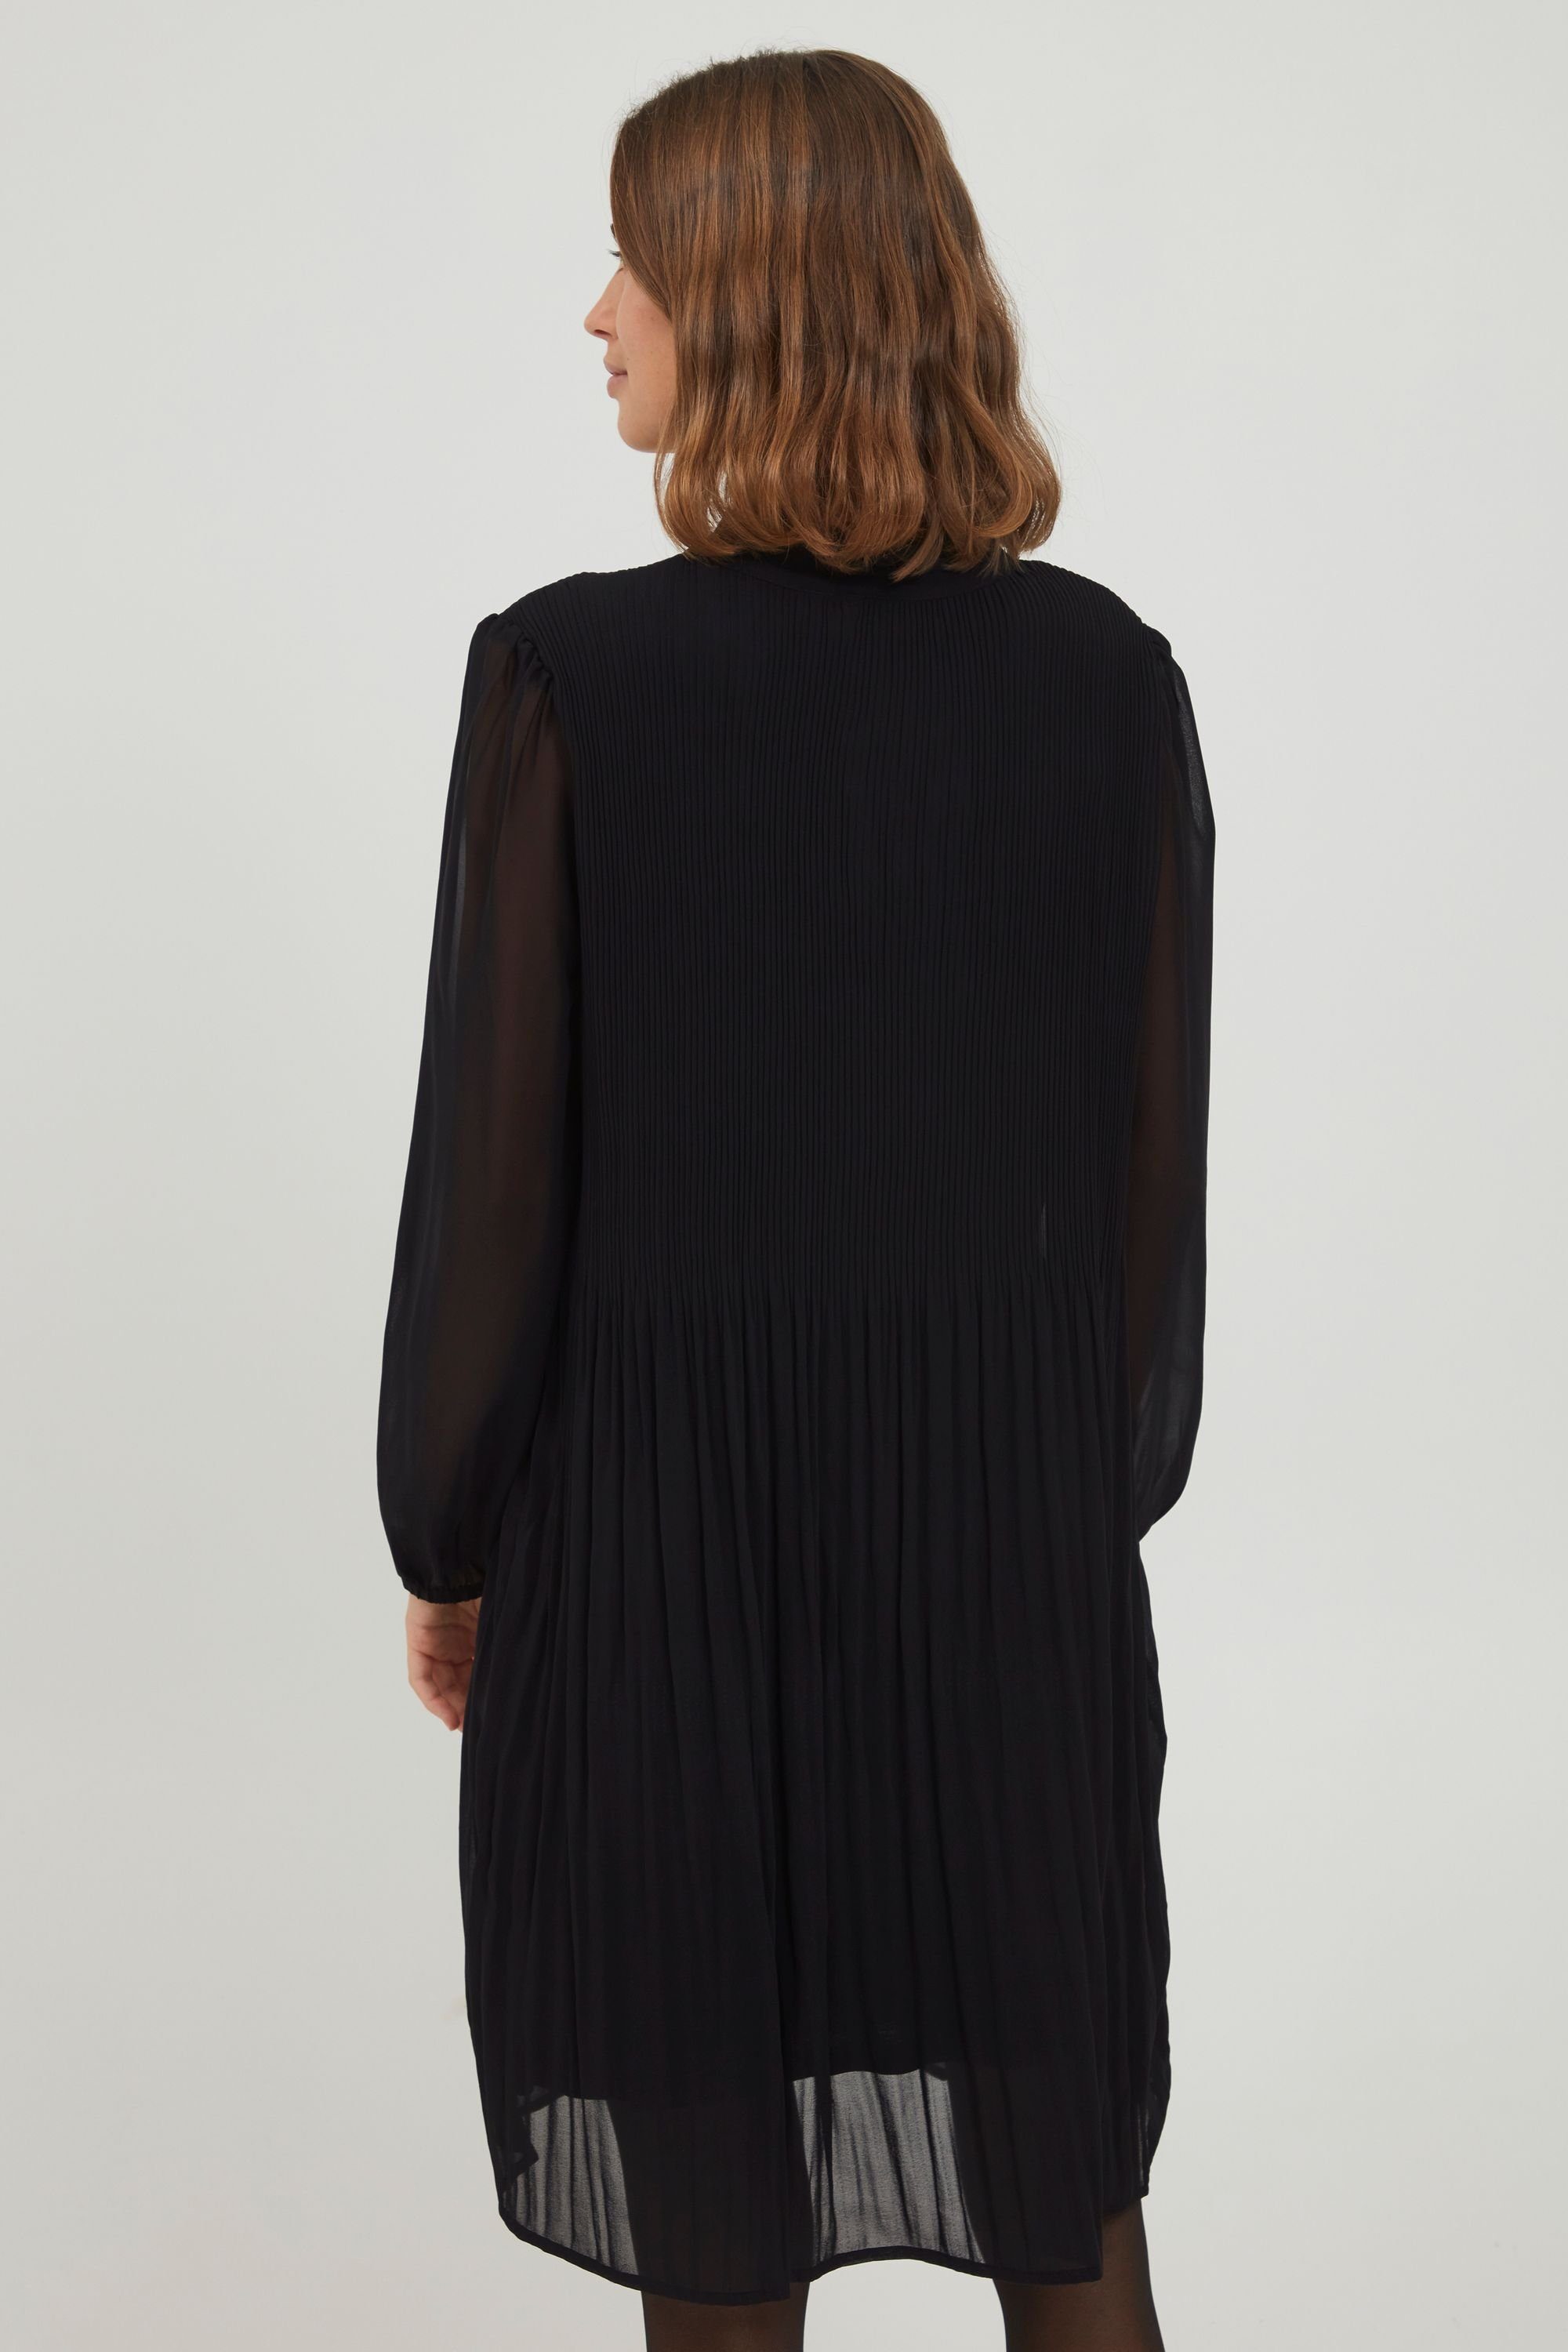 fransa Blusenkleid Black Dress 20609988 FRDAJAPLISSE Fransa 2 